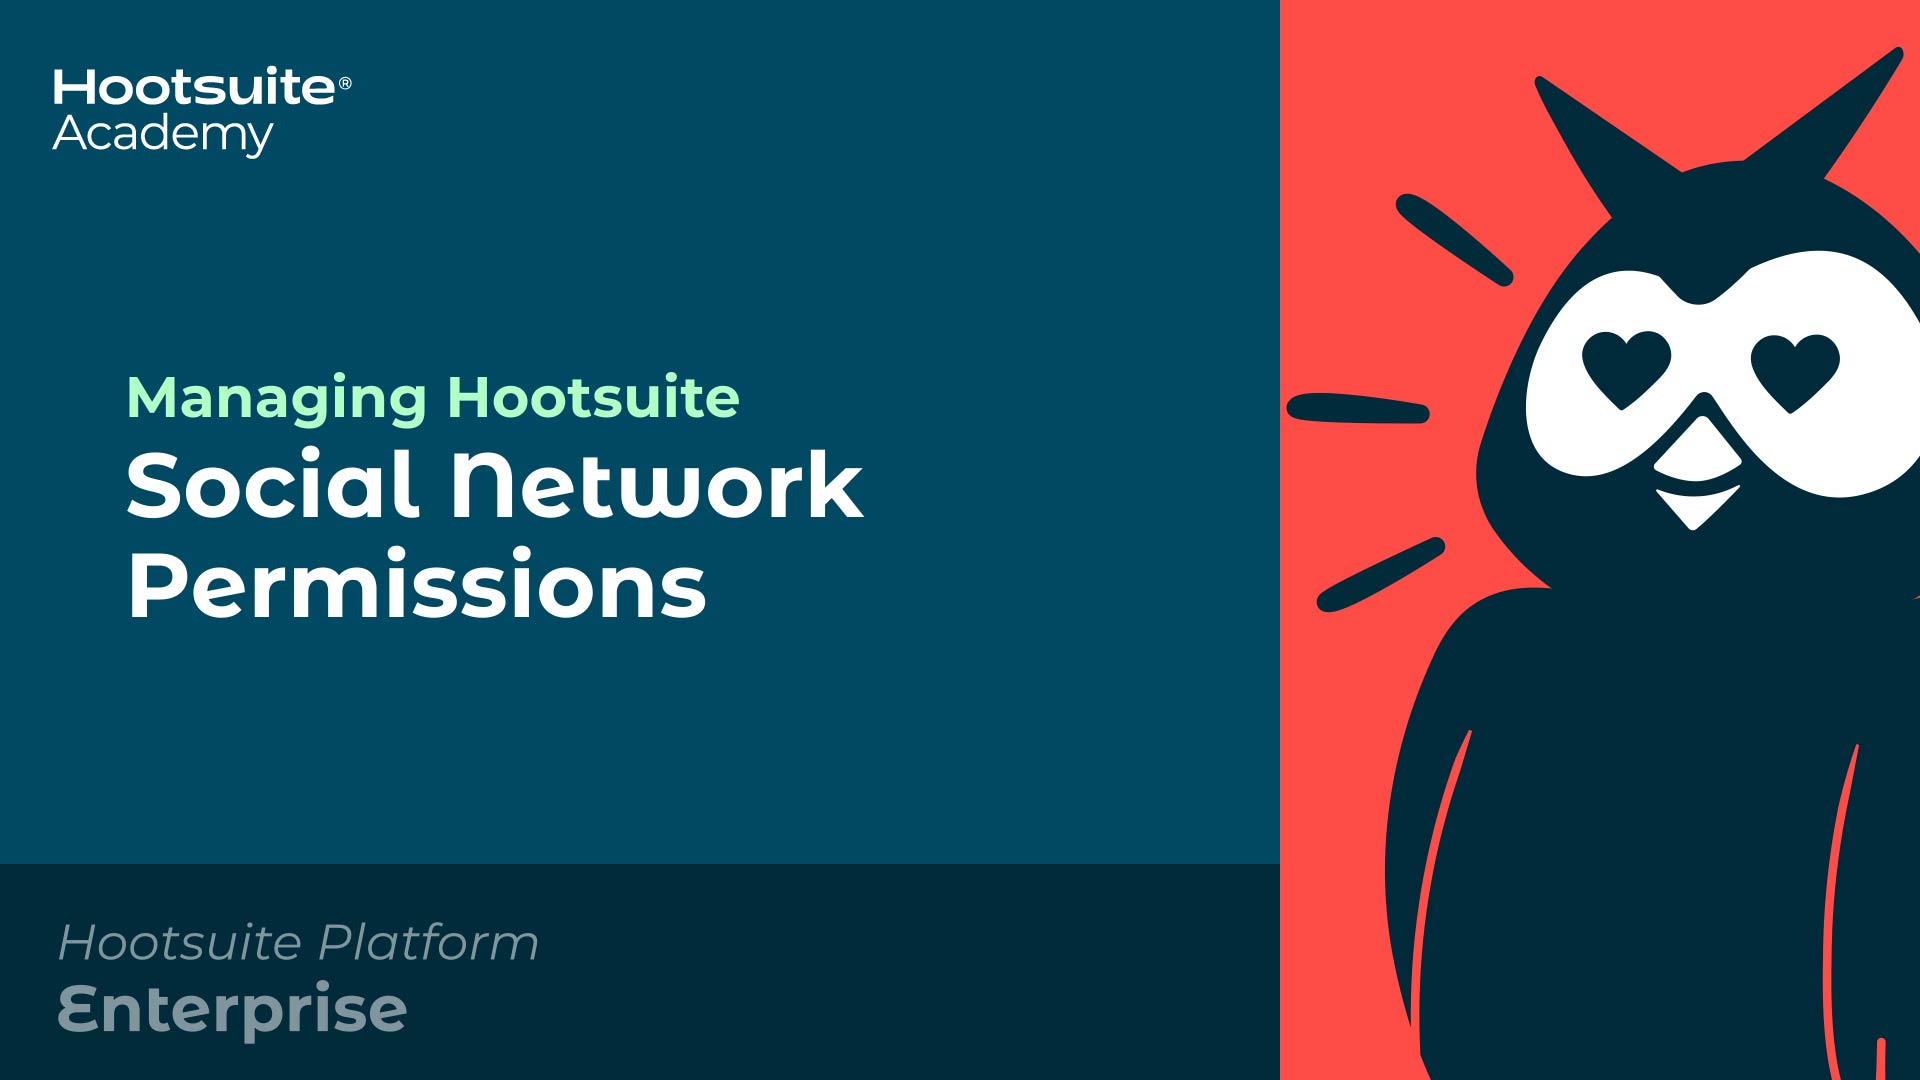 Vídeo sobre la gestión de los permisos de las redes sociales de Hootsuite.